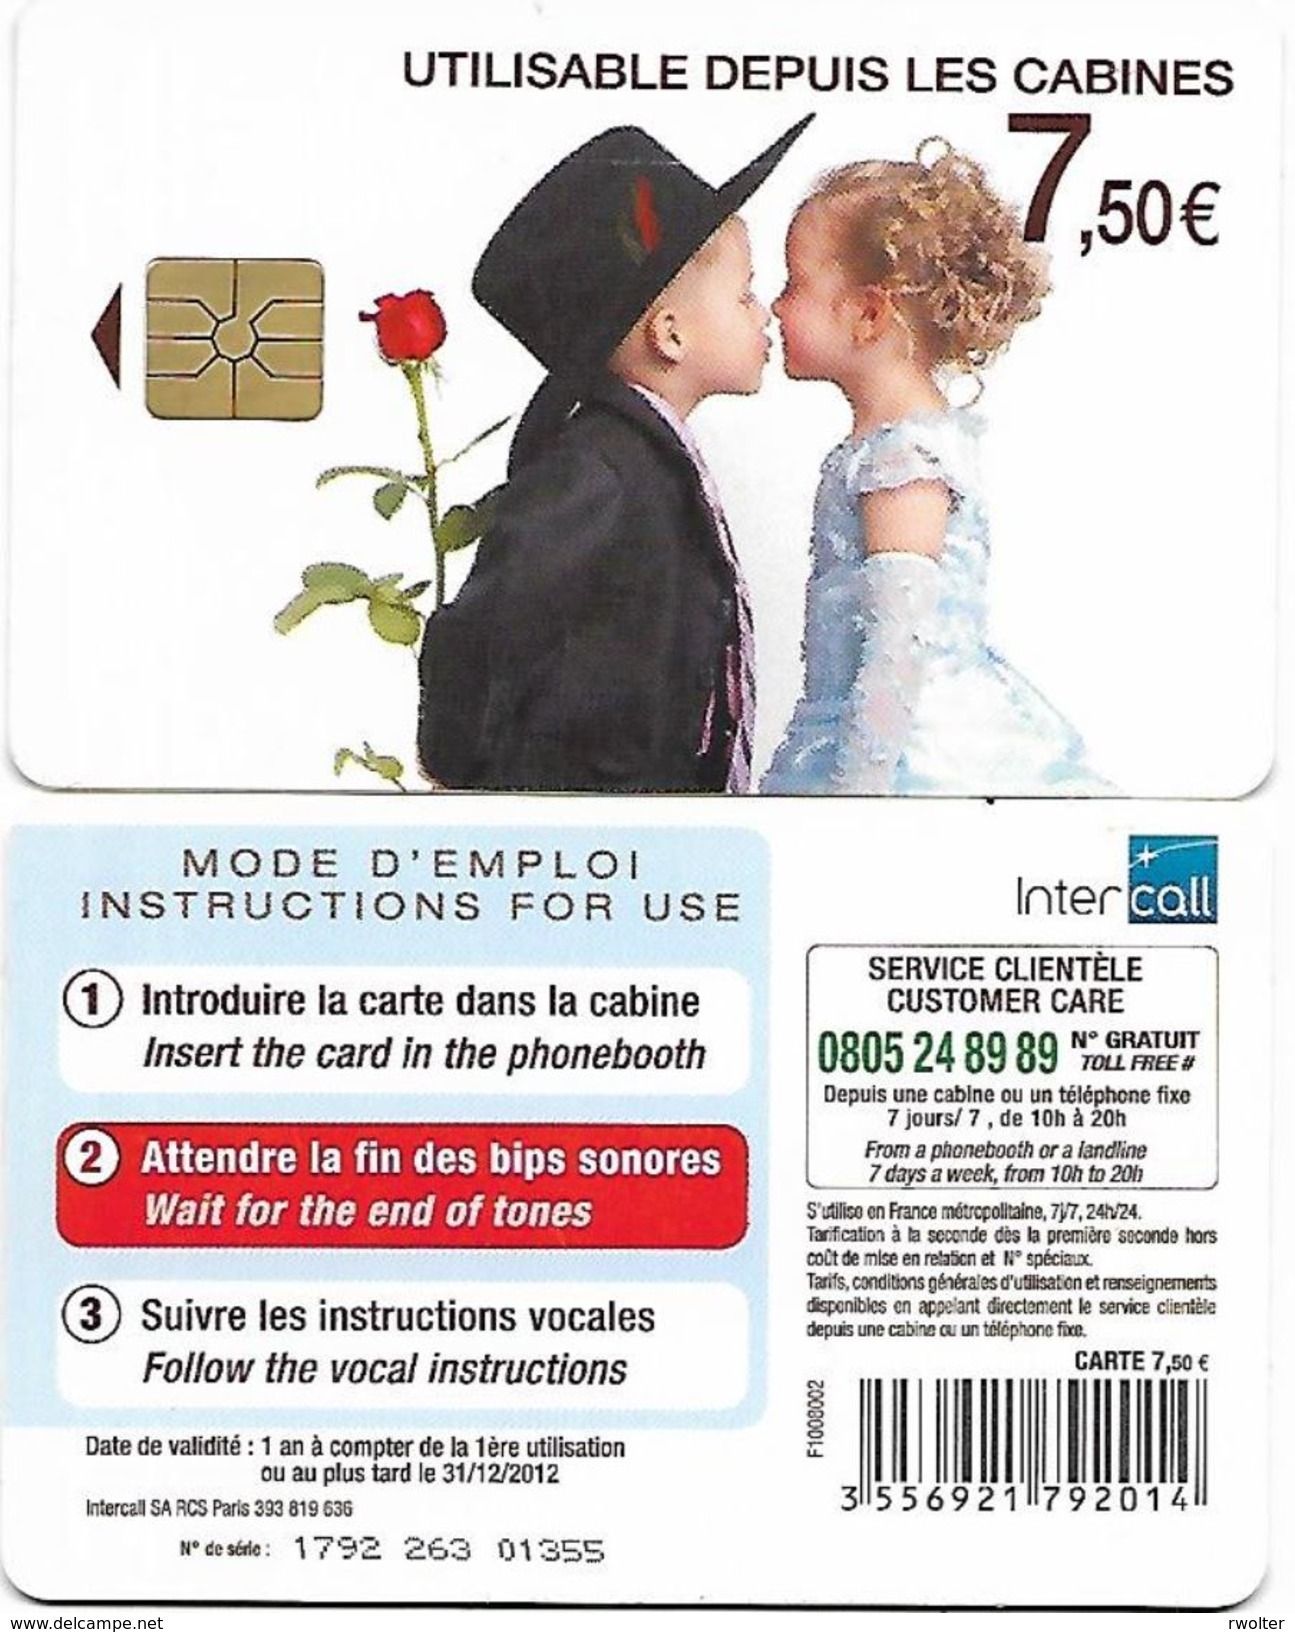 @+ France - Intercall à Puce 7,50€ - Mariage N°4 - Code F1008002 - Ref : CC-INT6A Verso Logo Intercall - 31/12/2012 - 2010